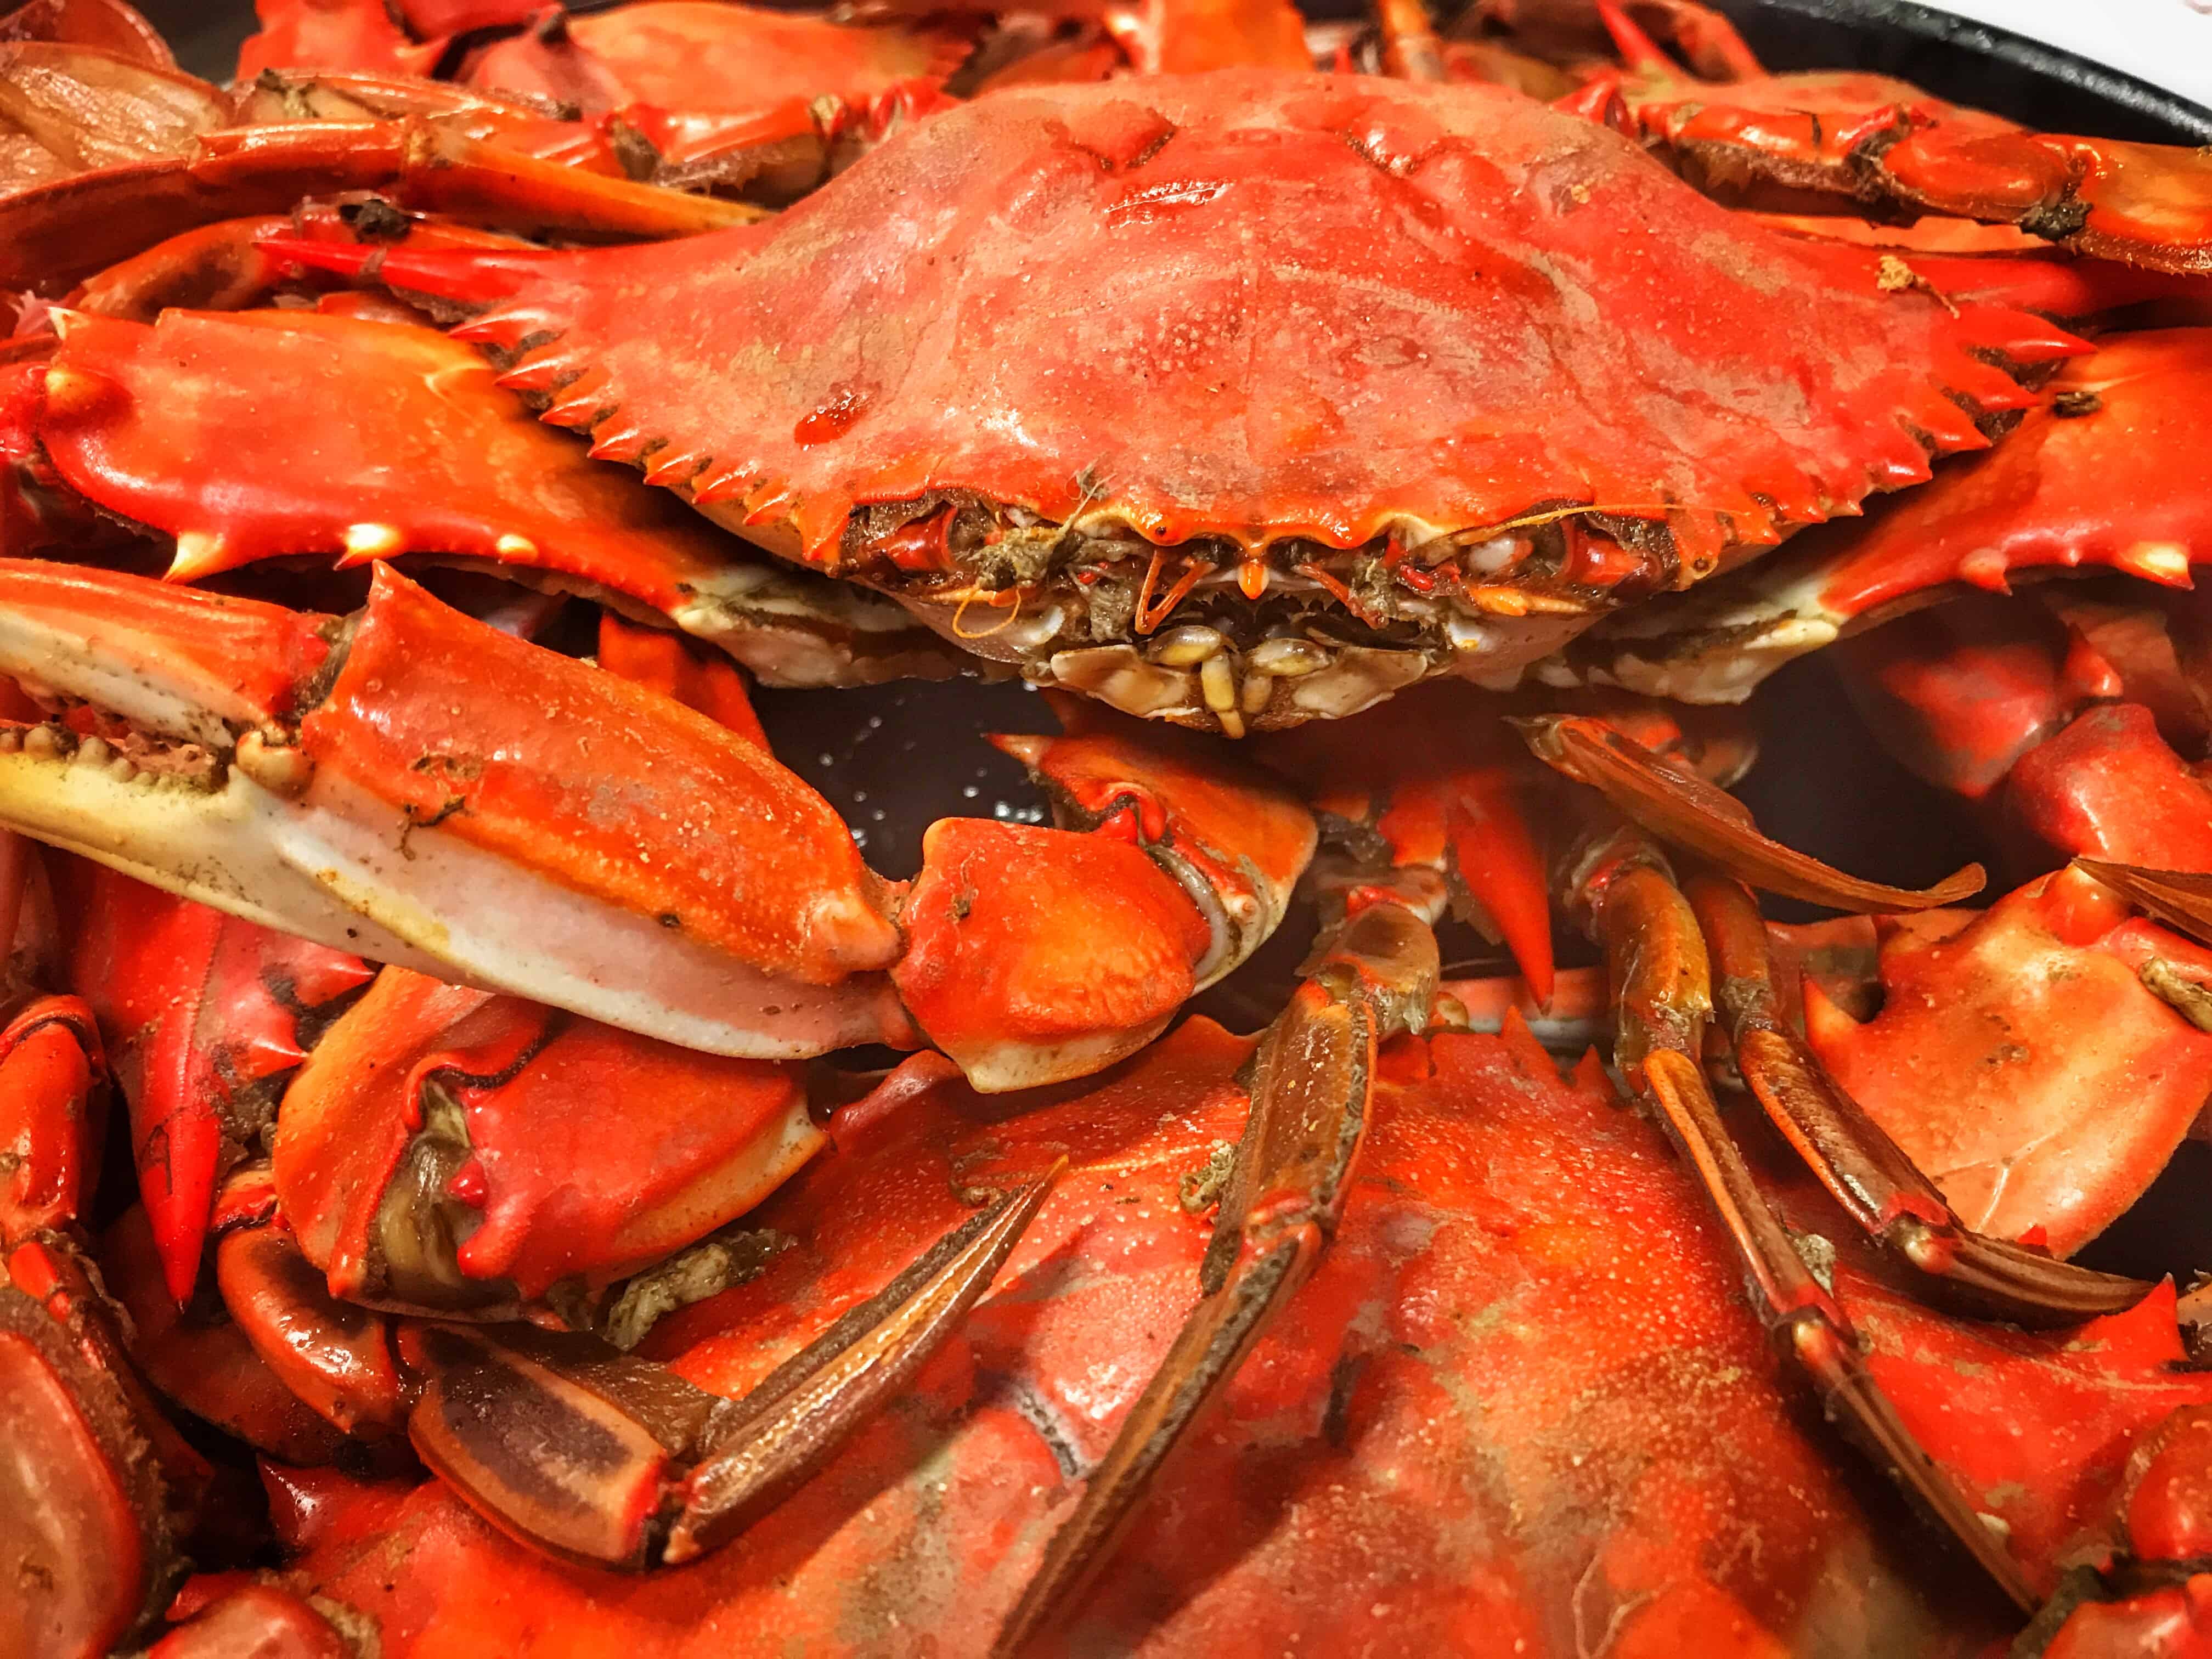 Boiled crabs at Seafood Palace Lake Charles LA